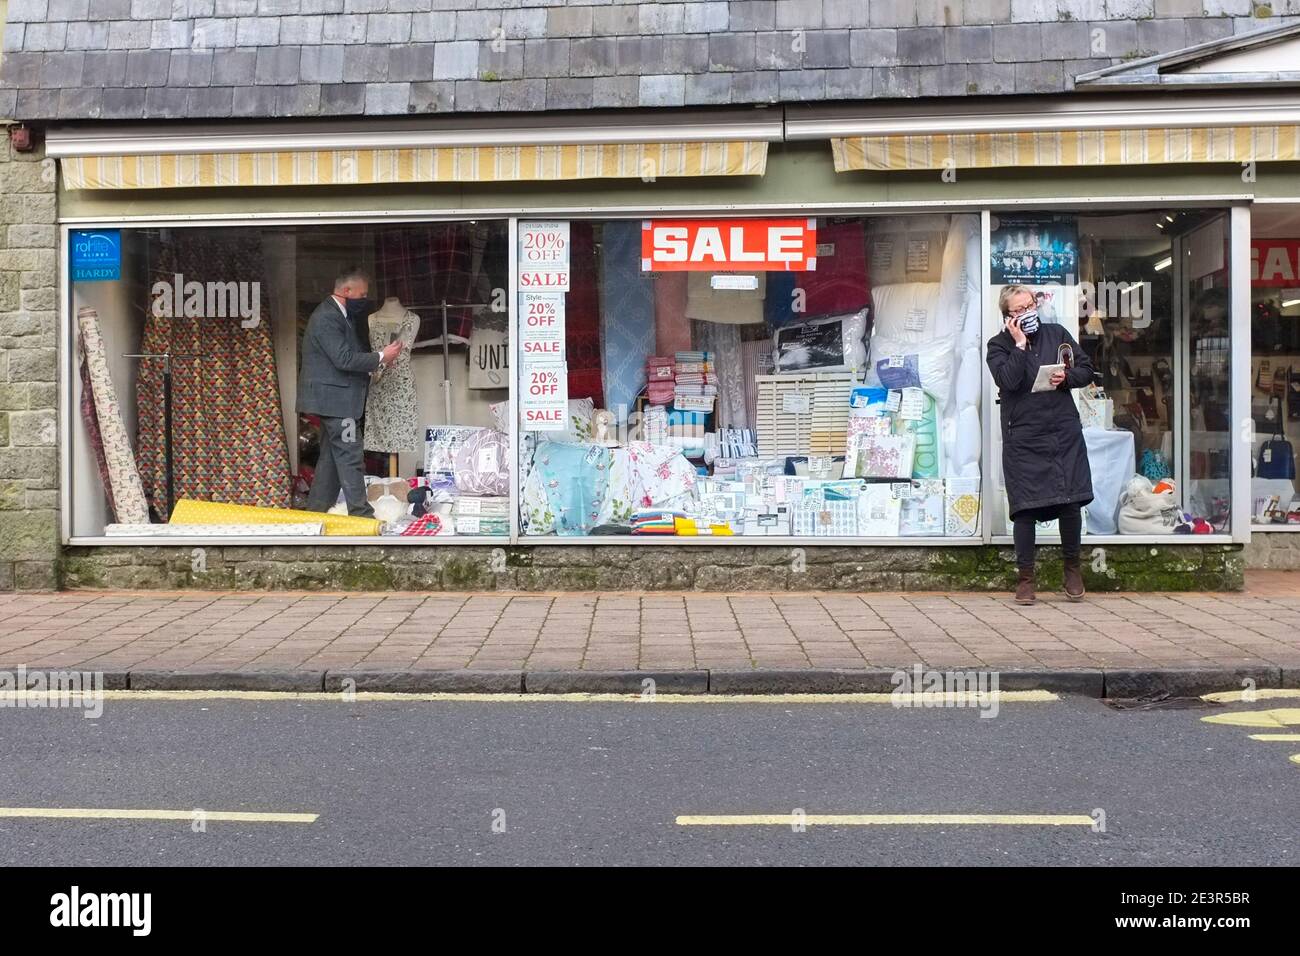 Le Royaume-Uni s'habitue aux restrictions relatives aux coronavirus. Un acheteur masqué à l'extérieur d'un magasin où un assistant masqué prépare l'affichage de la fenêtre de vente. Décembre 2020. Banque D'Images